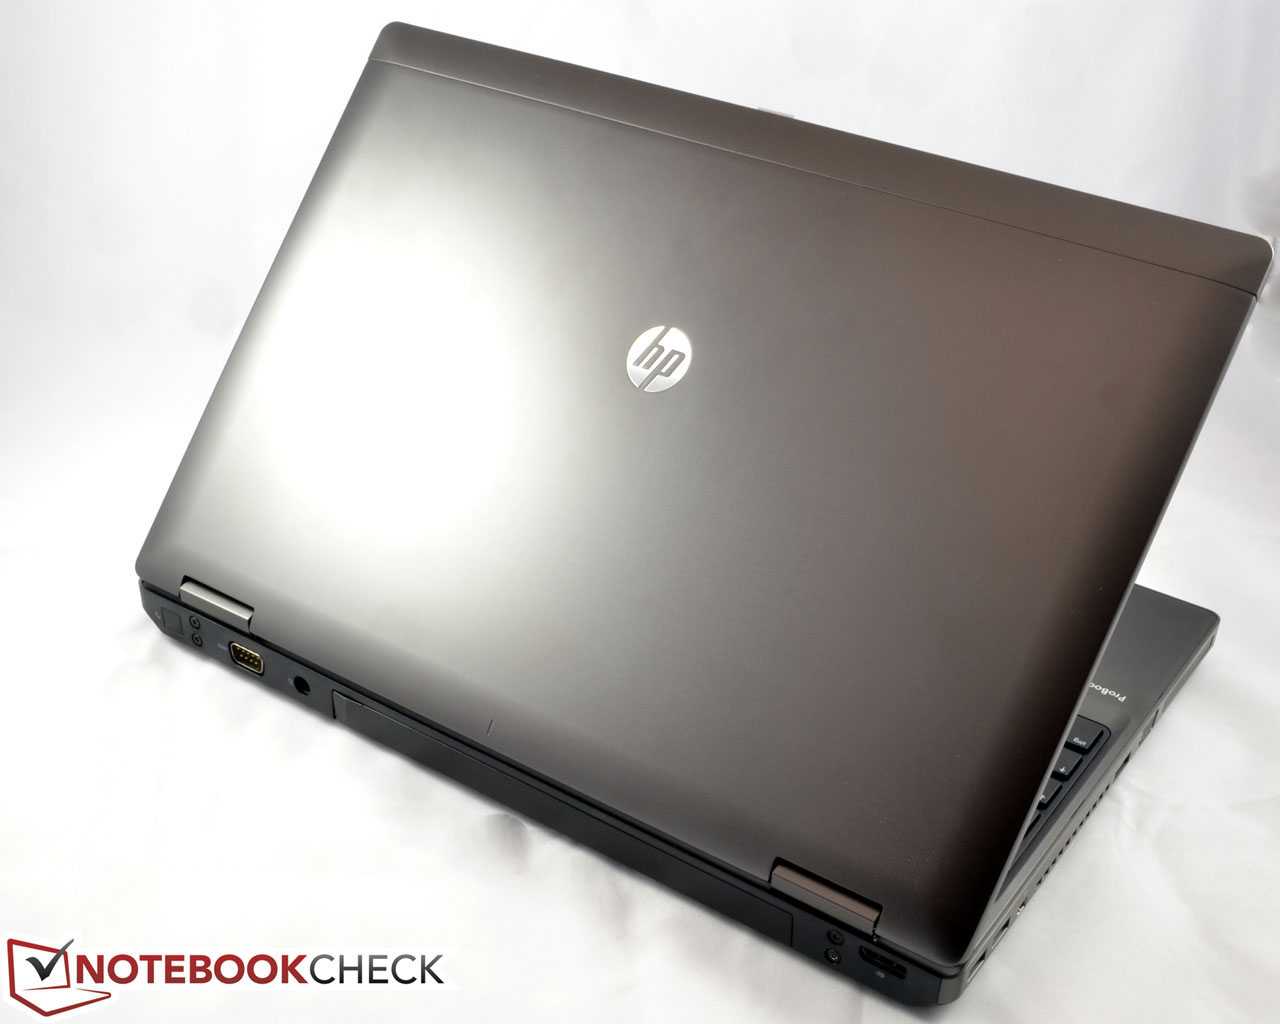 Ноутбук hp probook 6570b — купить, цена и характеристики, отзывы